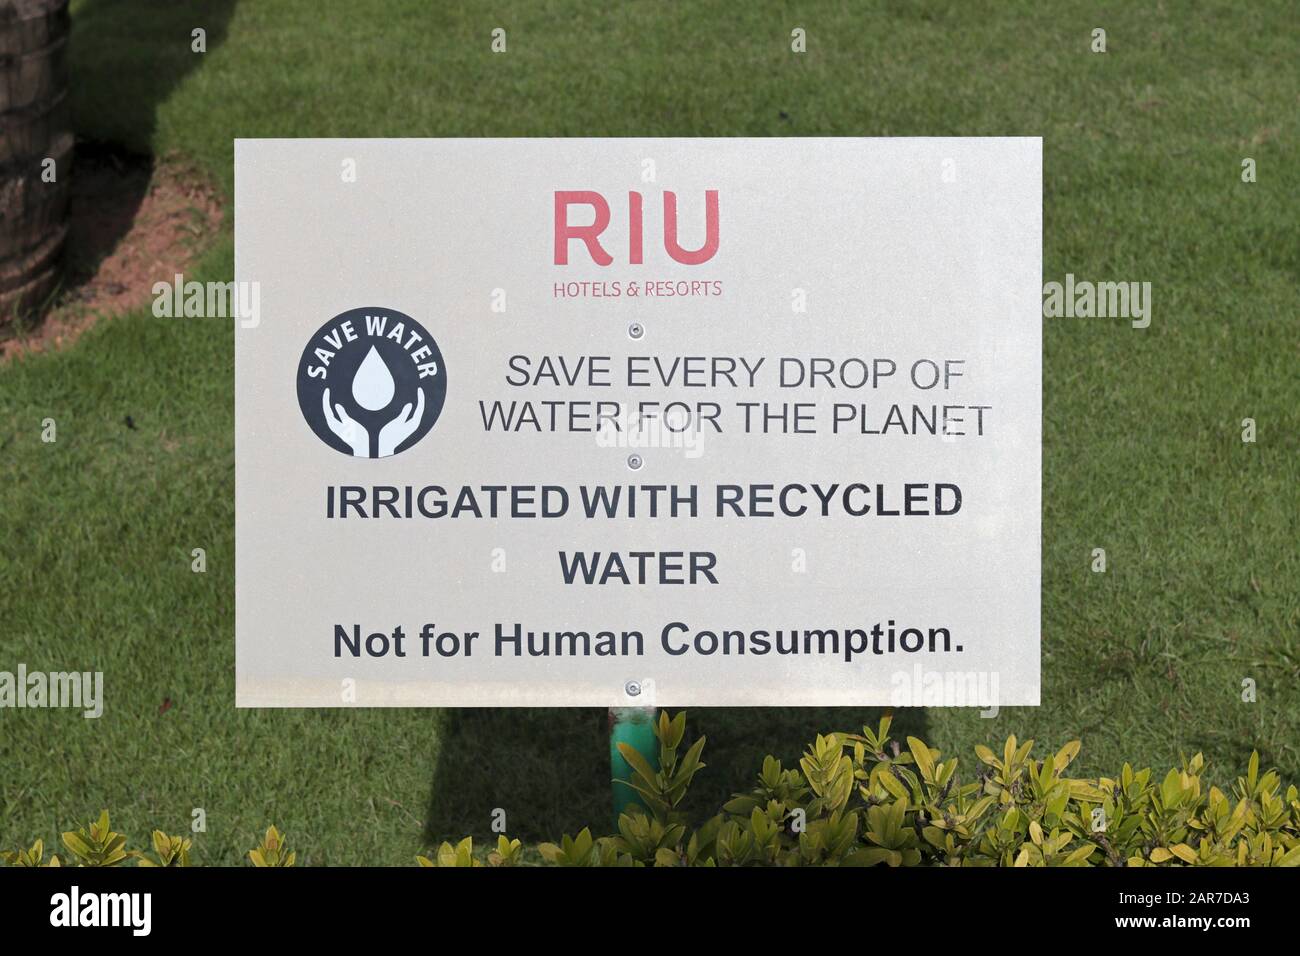 Un cartel en los terrenos de un hotel RIU que dice - Ahorre agua. Salva Cada gota de agua para el planeta. Irrigado con agua reciclada. No para Consum humano Foto de stock